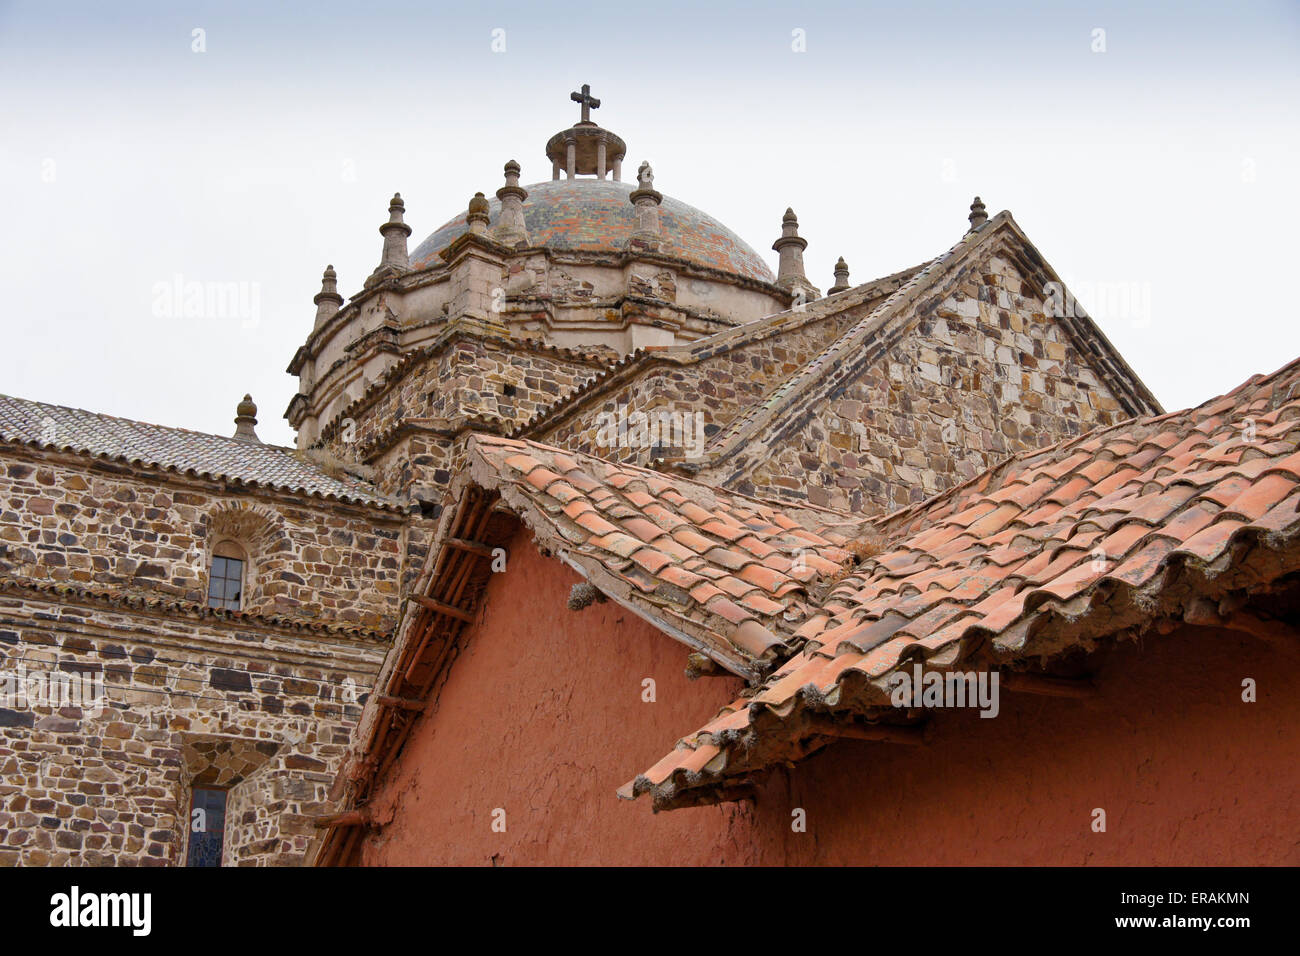 Azulejos de techo y azotea de Santiago Apostol iglesia (Iglesia de la Inmaculada), Lampa, Perú Foto de stock